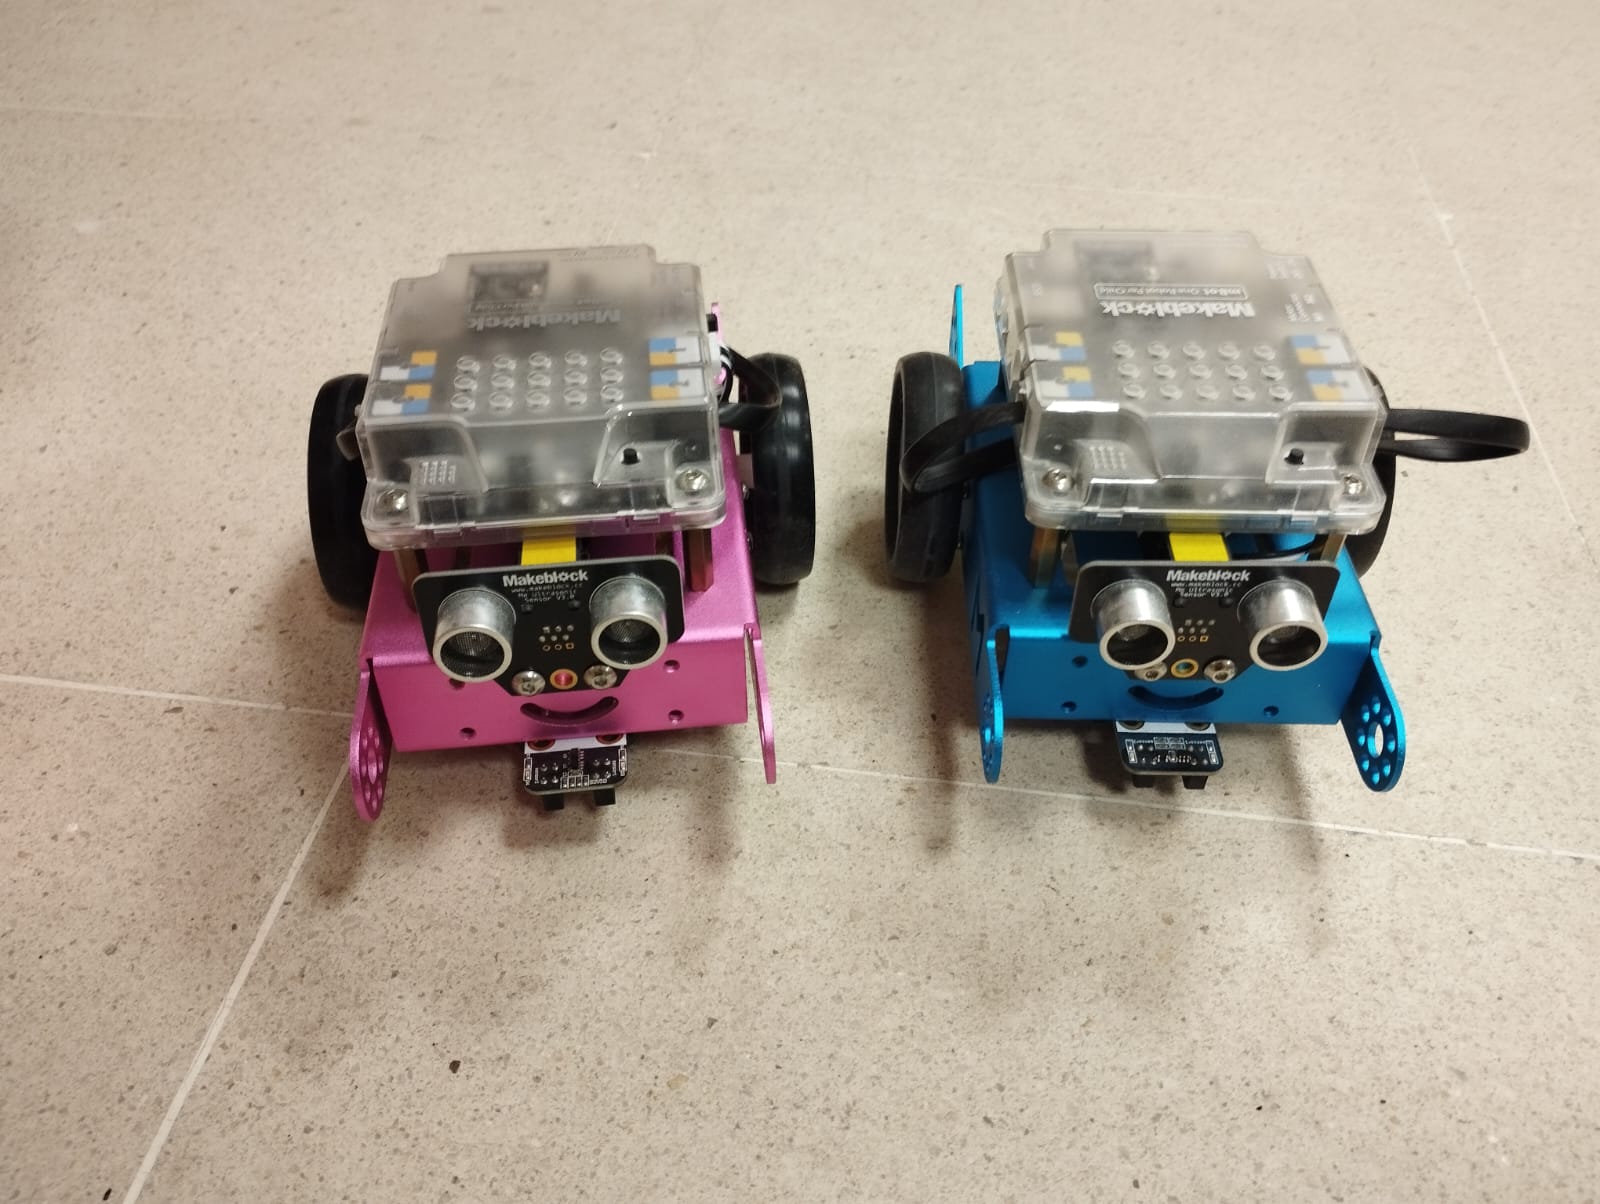 2 robots coche un de cor rosa e un de cor azul